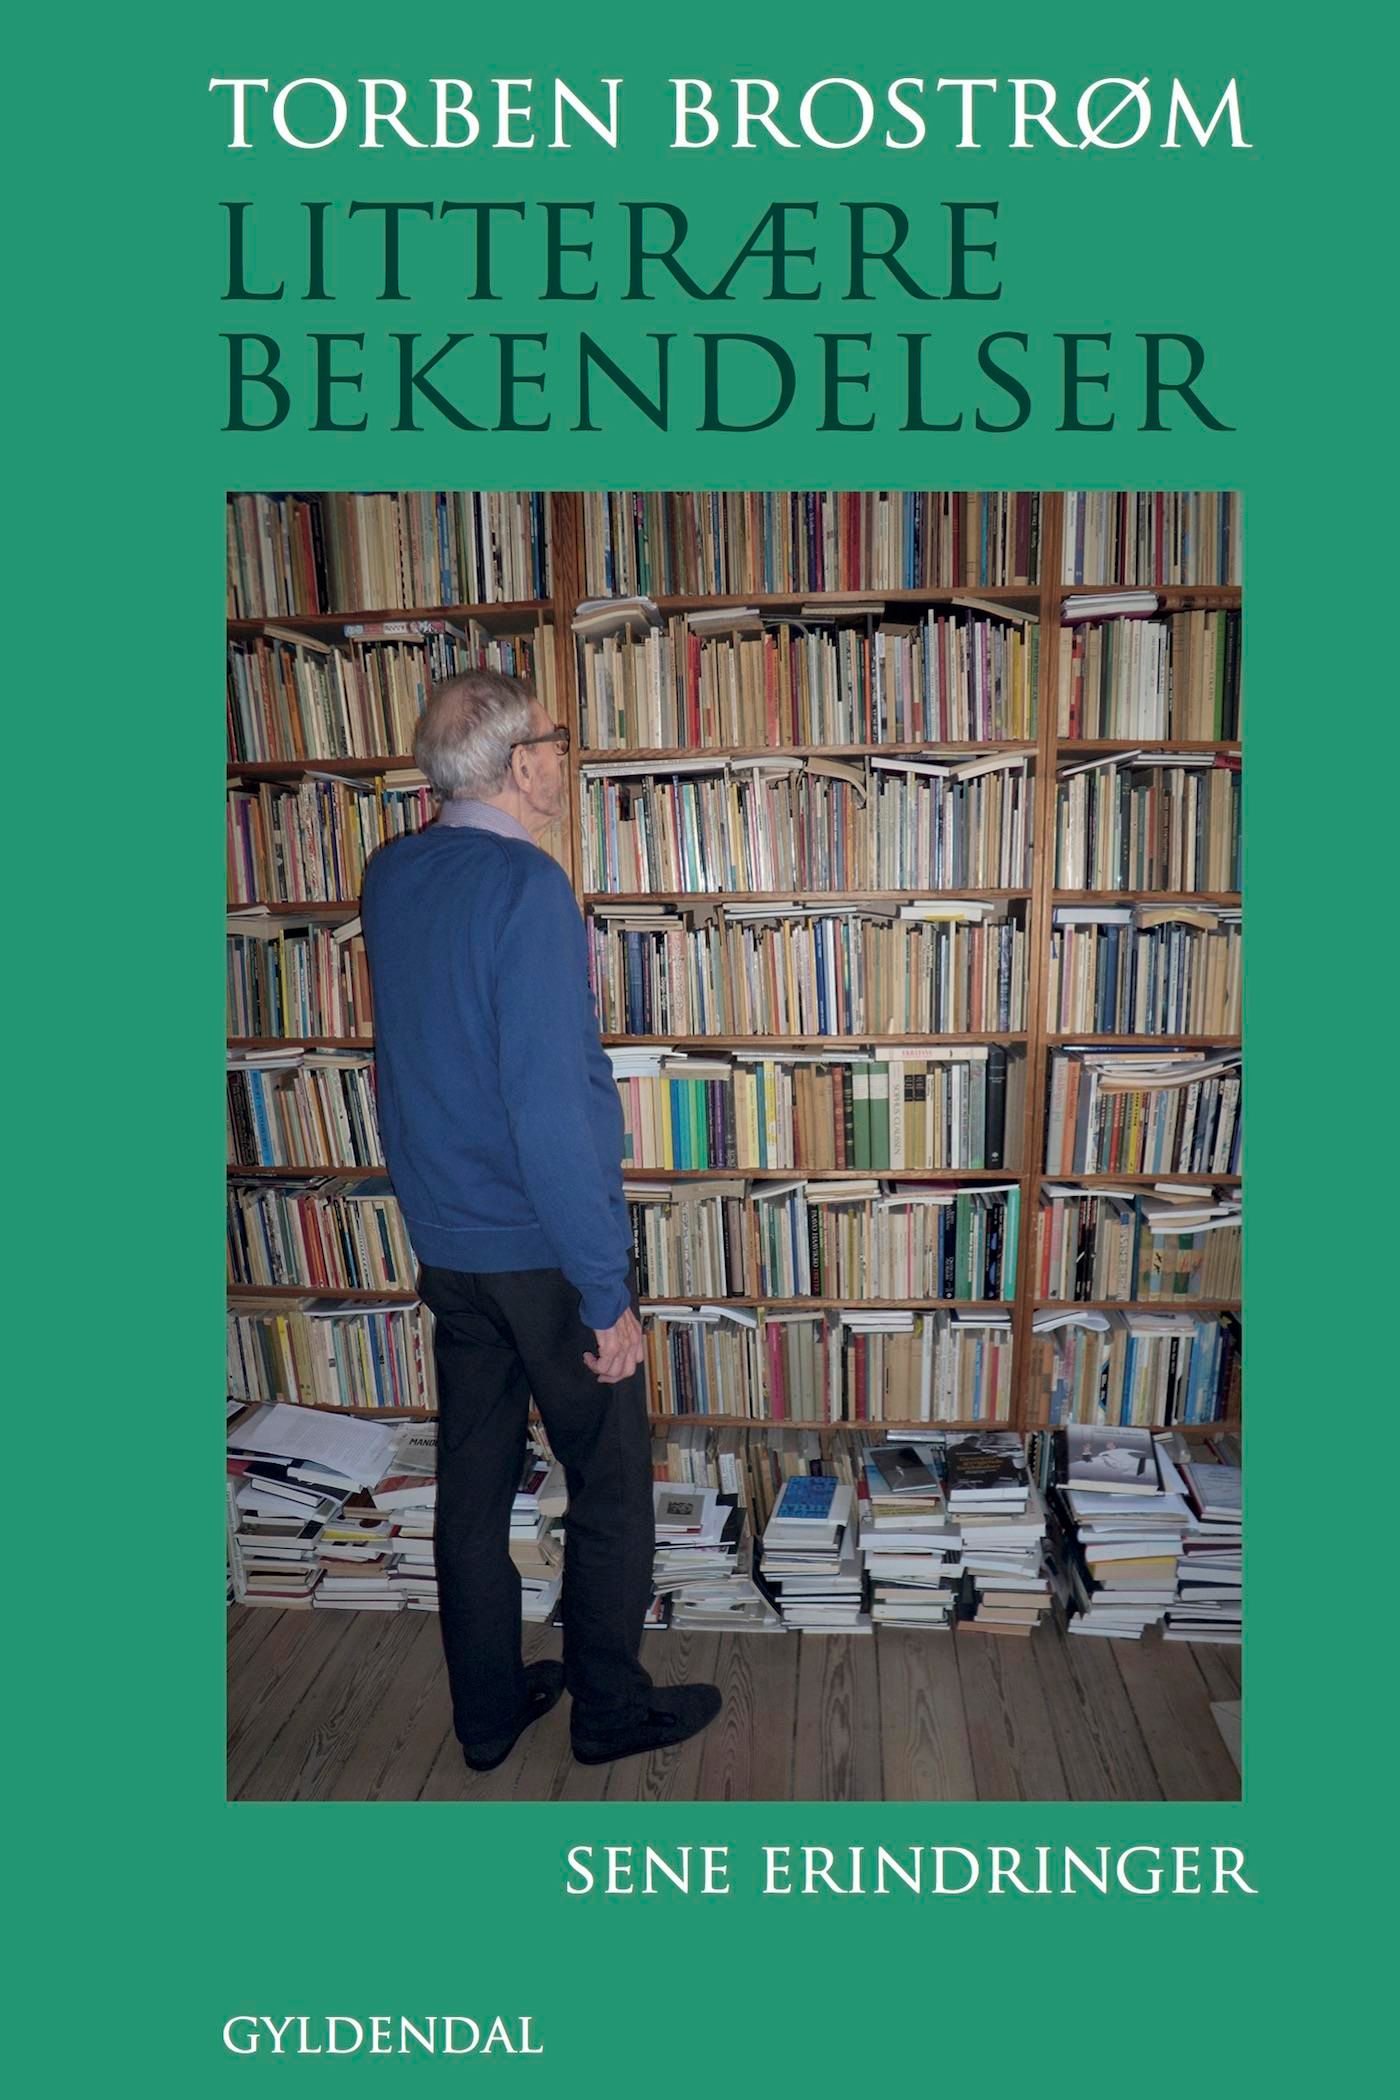 Litterære bekendelser, e-bog af Torben Brostrøm